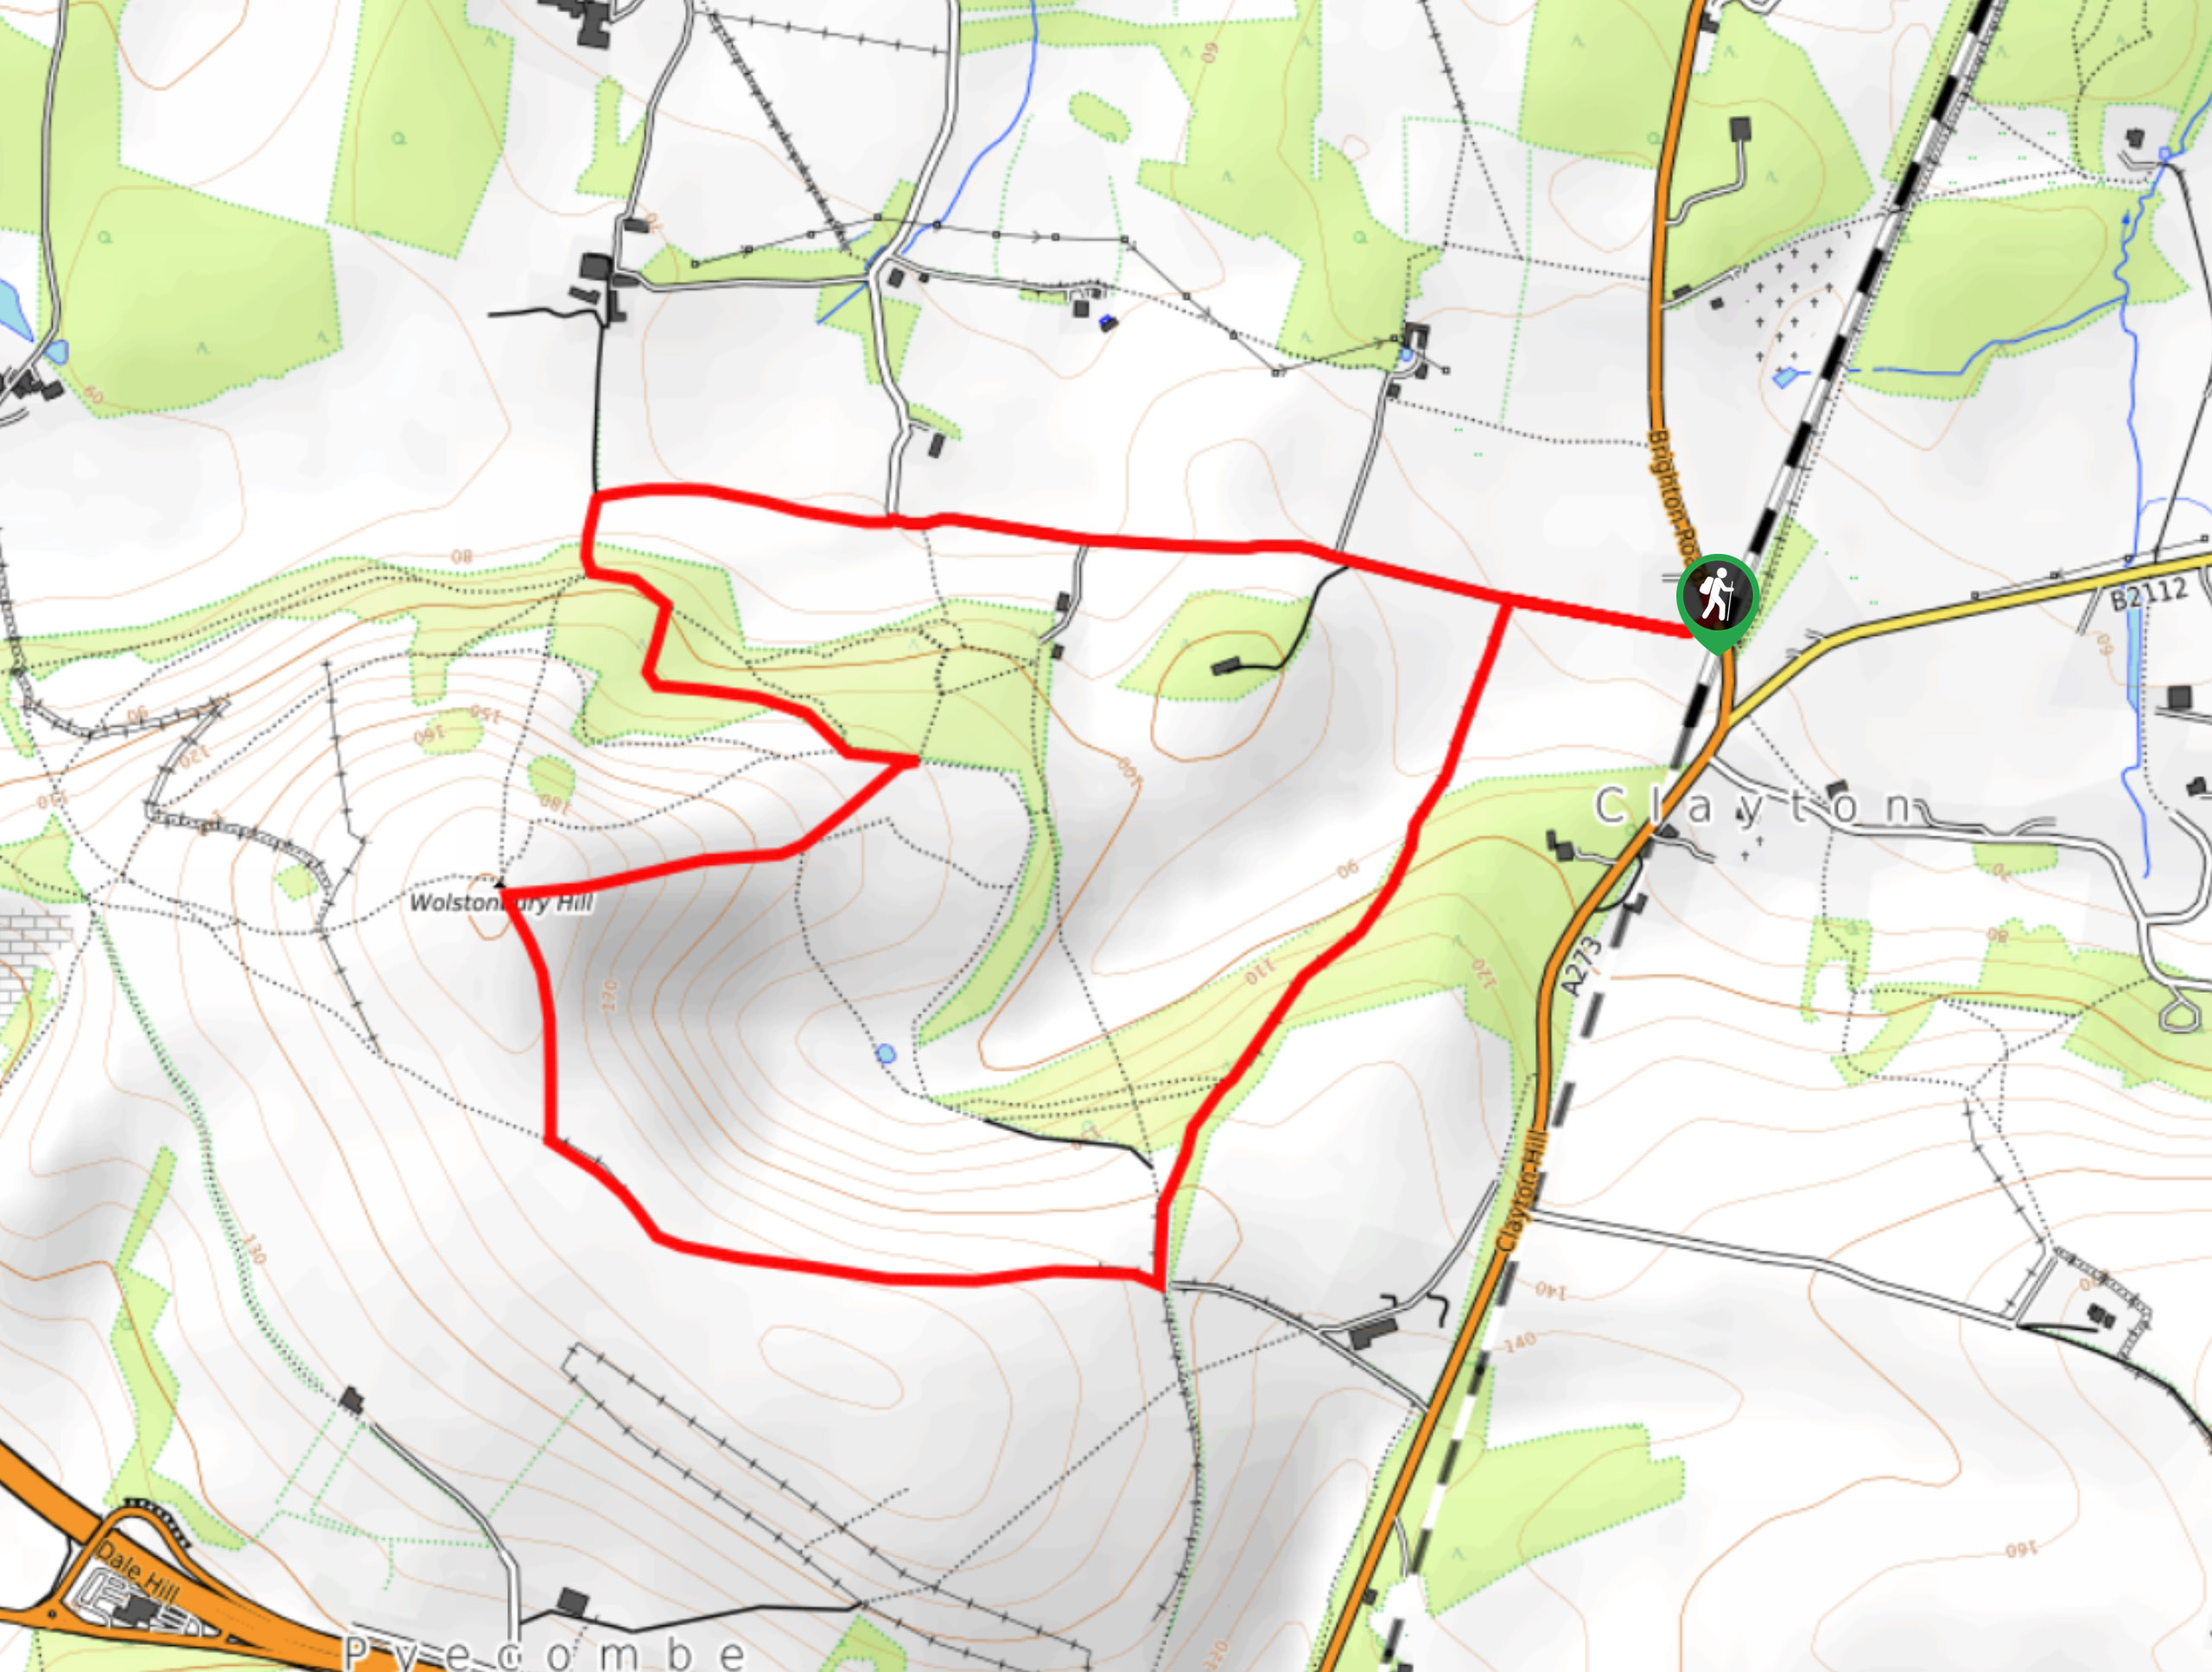 Wolstonbury Hill Walk Map